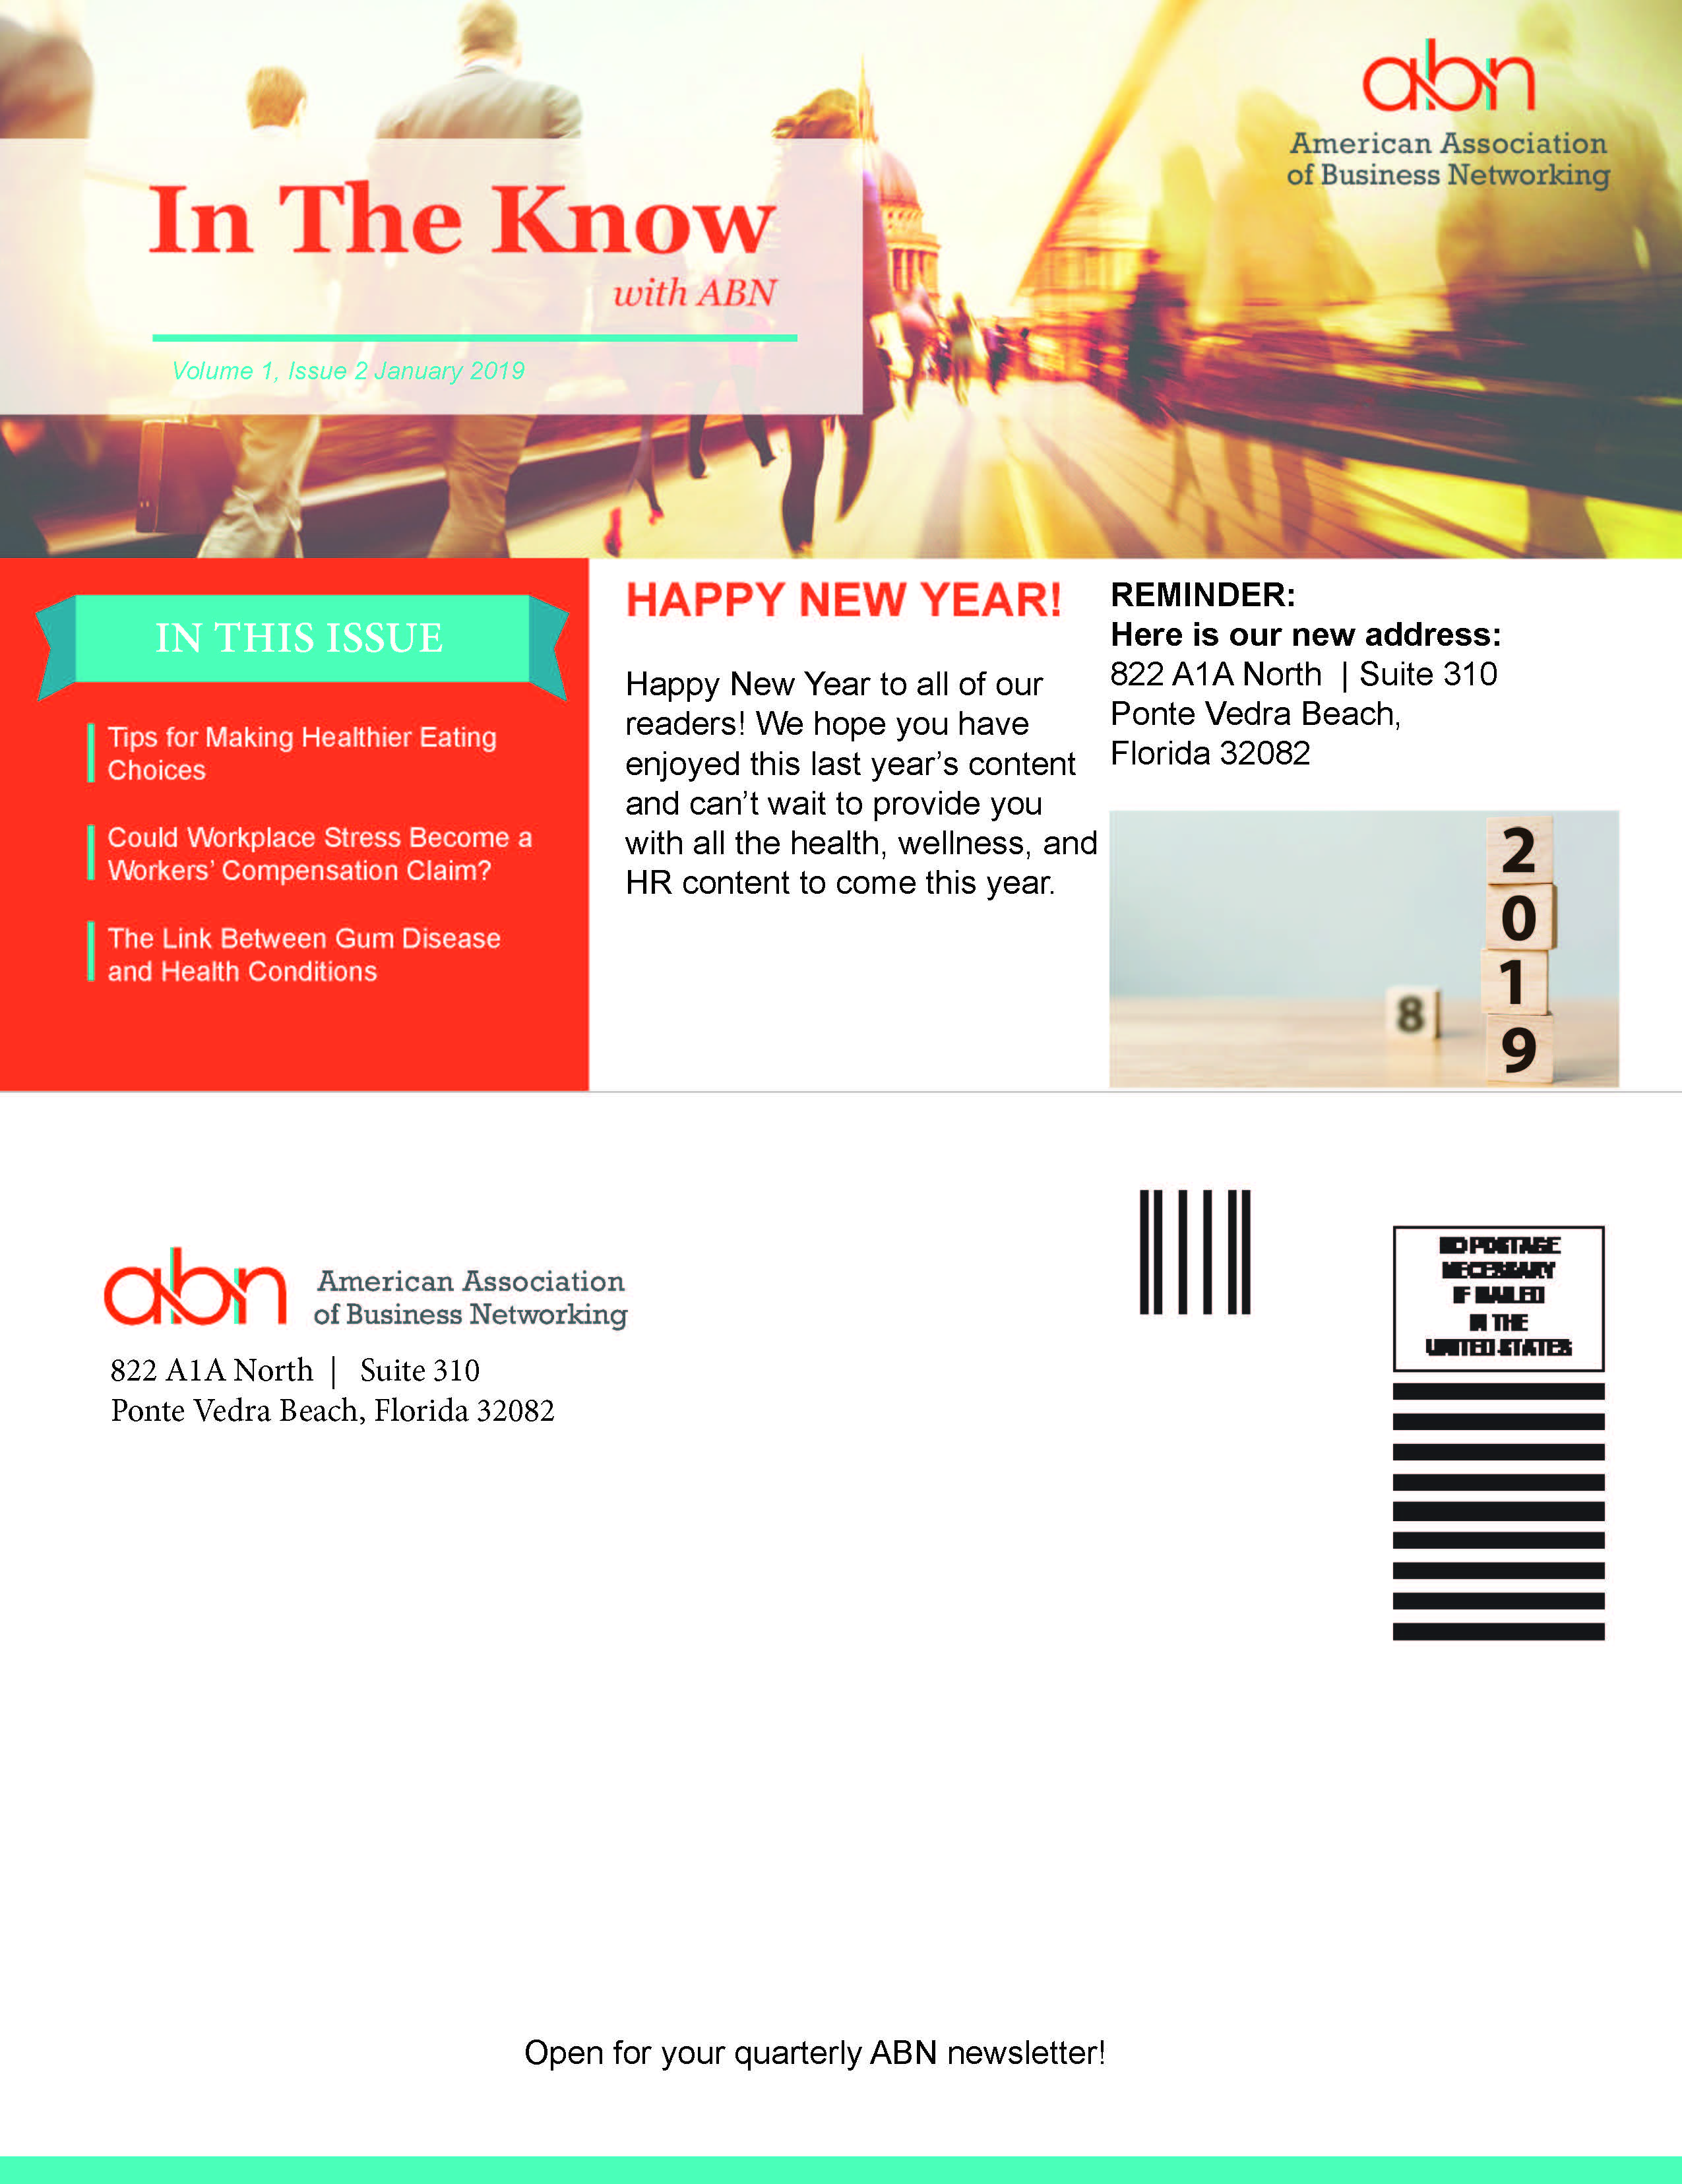 ABN Quarterly Newsletter January 2018 Volume 2 Issue 2 img 1